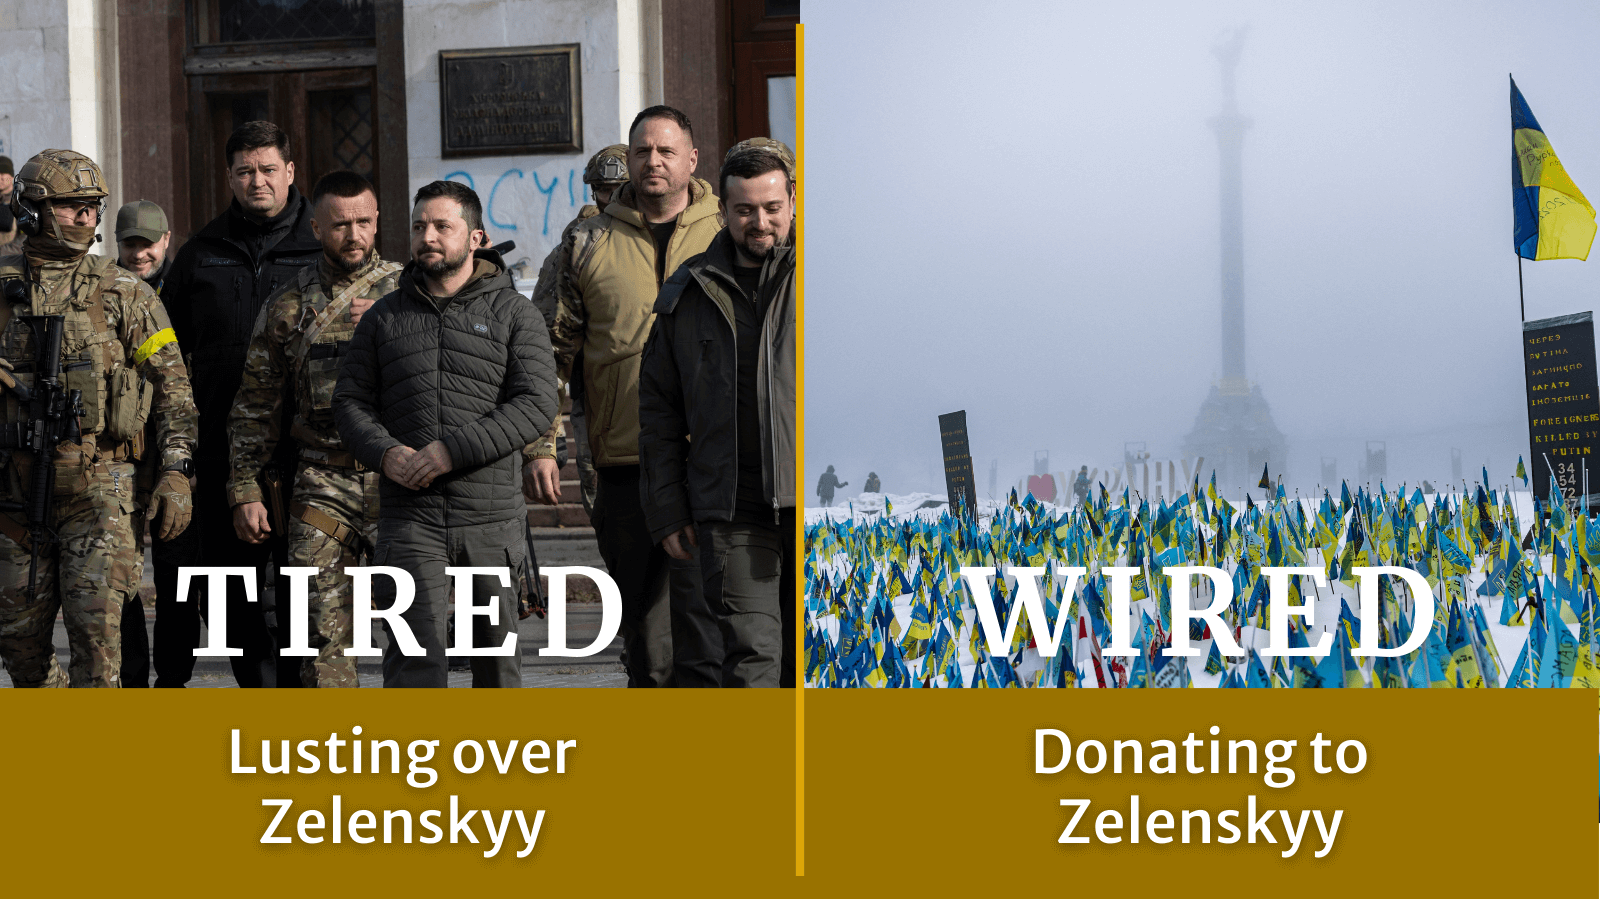 Tired: Lusting over Zelenskyy. Wired: Donating to Zelenskyy